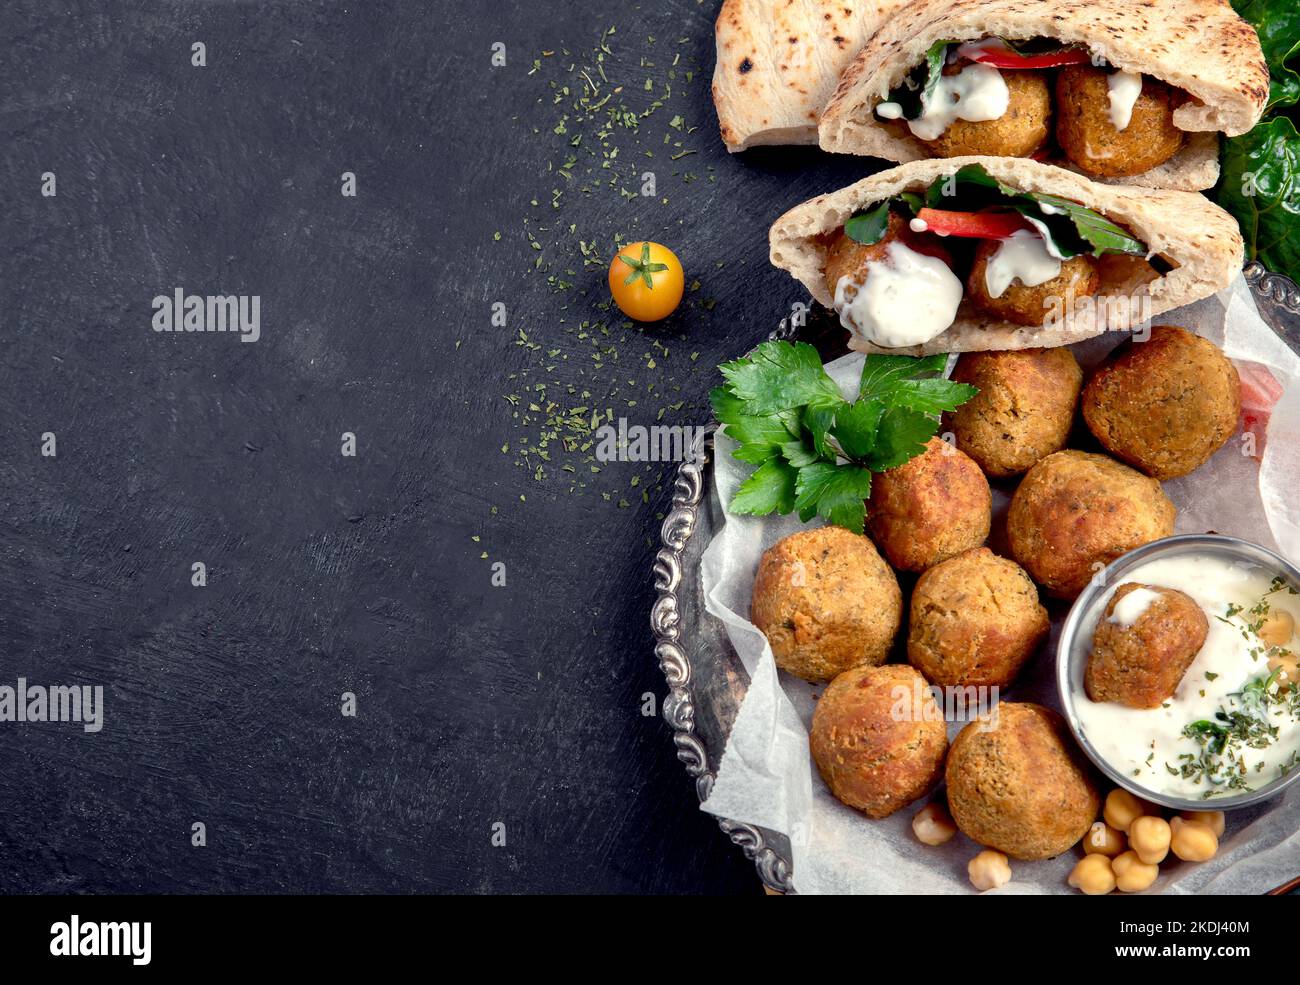 Medio Oriente, piatti arabi con falafel, hummus, pita. Halal cibo. Cucina libanese. Vista dall'alto, spazio di copia Foto Stock